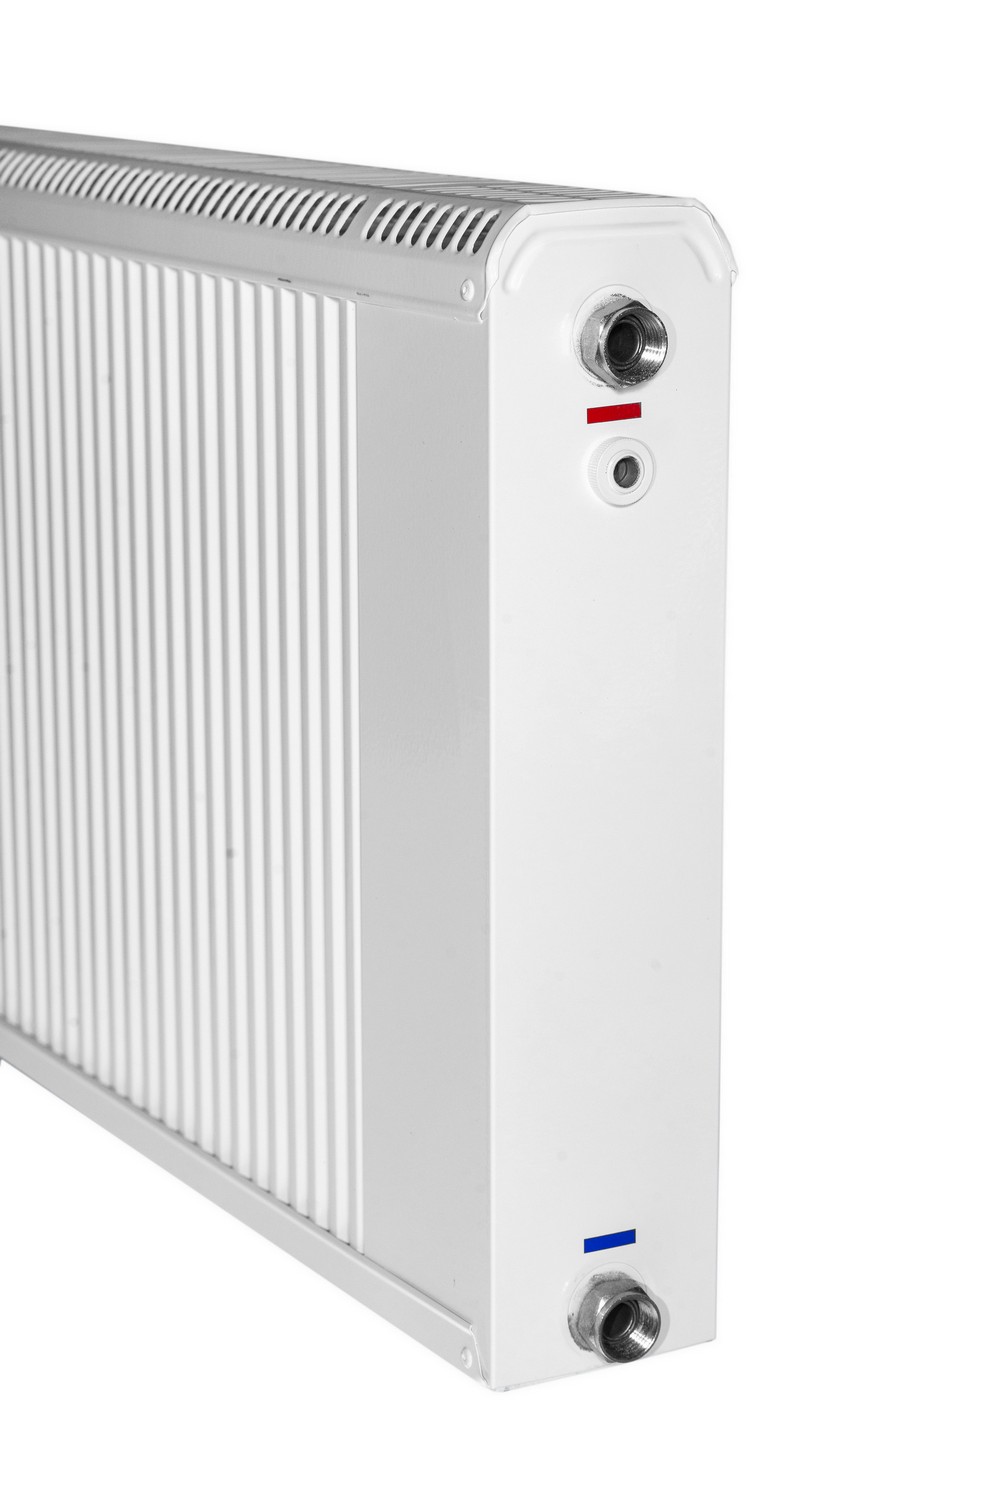 Радиатор для отопления Термия РБ 40/140 цена 5010 грн - фотография 2